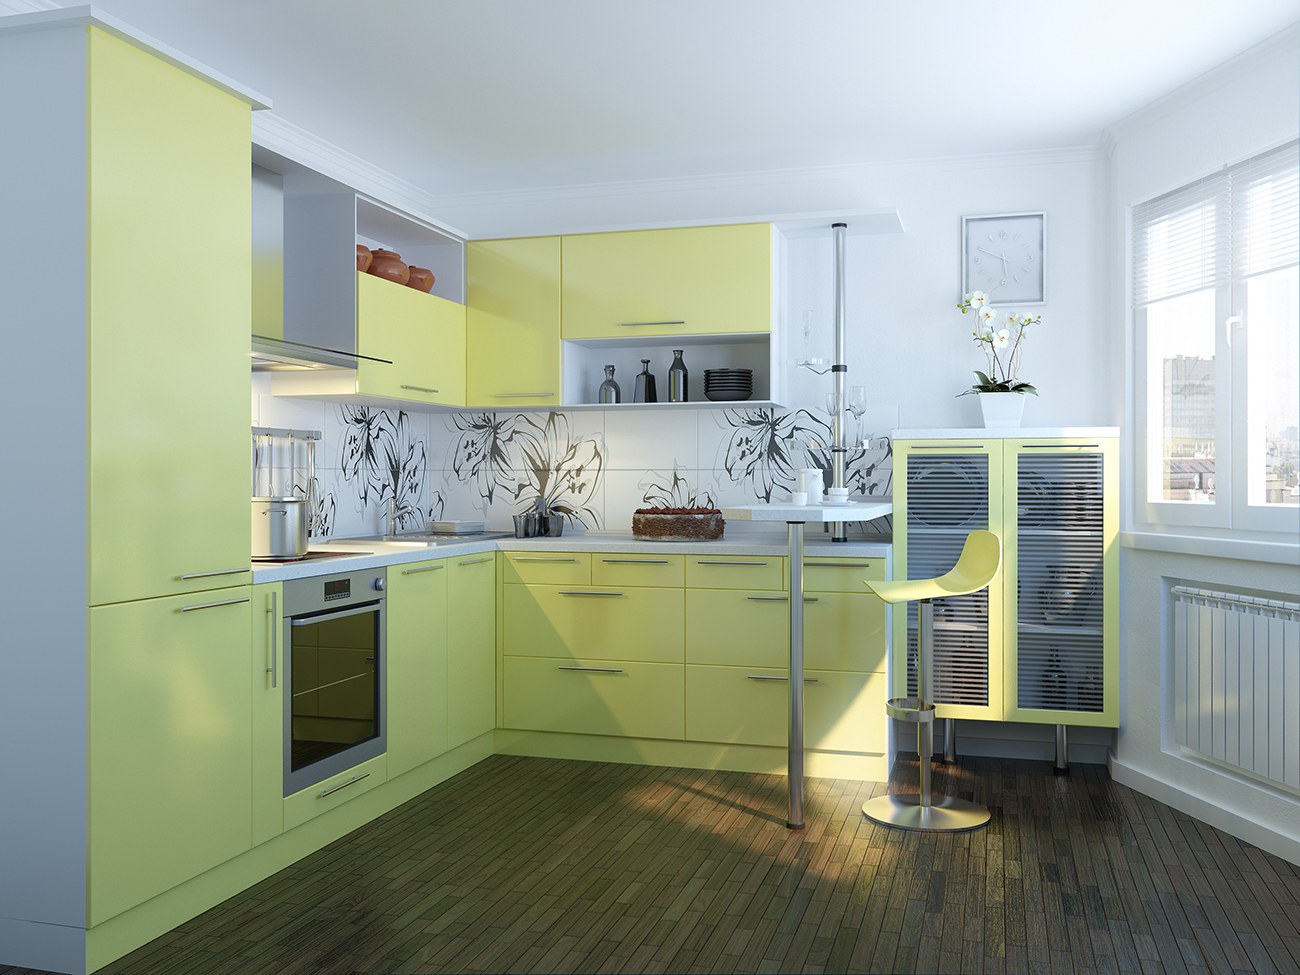 Кухонный гарнитур угловой цвет. Кухня в желтом цвете. Кухня в желто зеленых тонах. Желтый кухонный гарнитур. Кухня лимонного цвета.